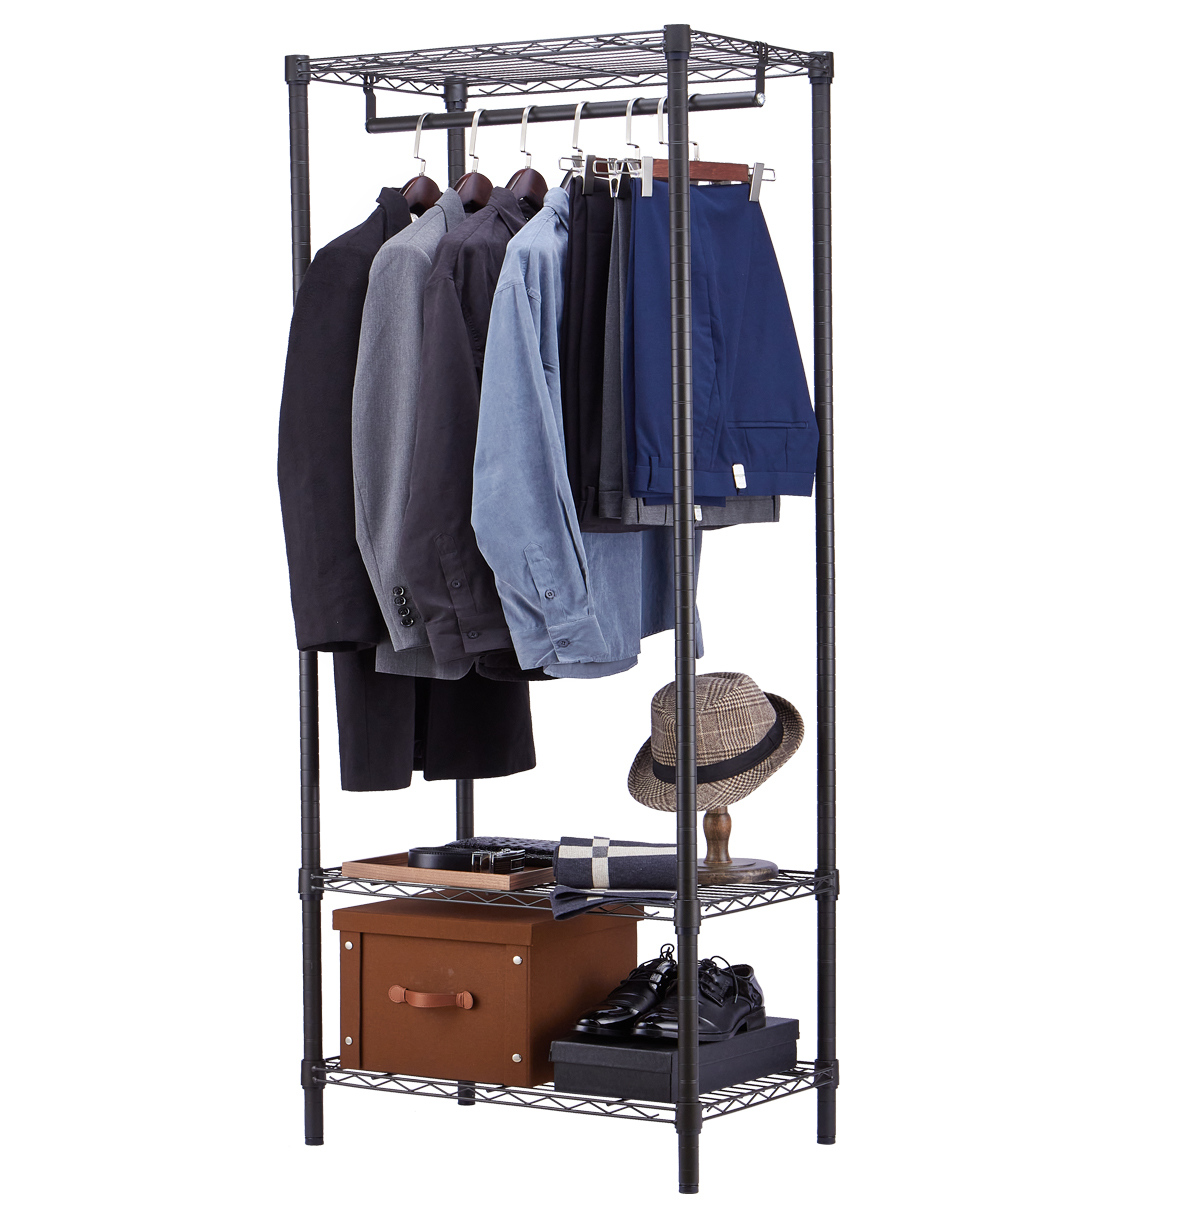  3 Tier Wire Closet Shelf Organizer With Hanging Rod / Freestanding Open Wardrobe Organizer